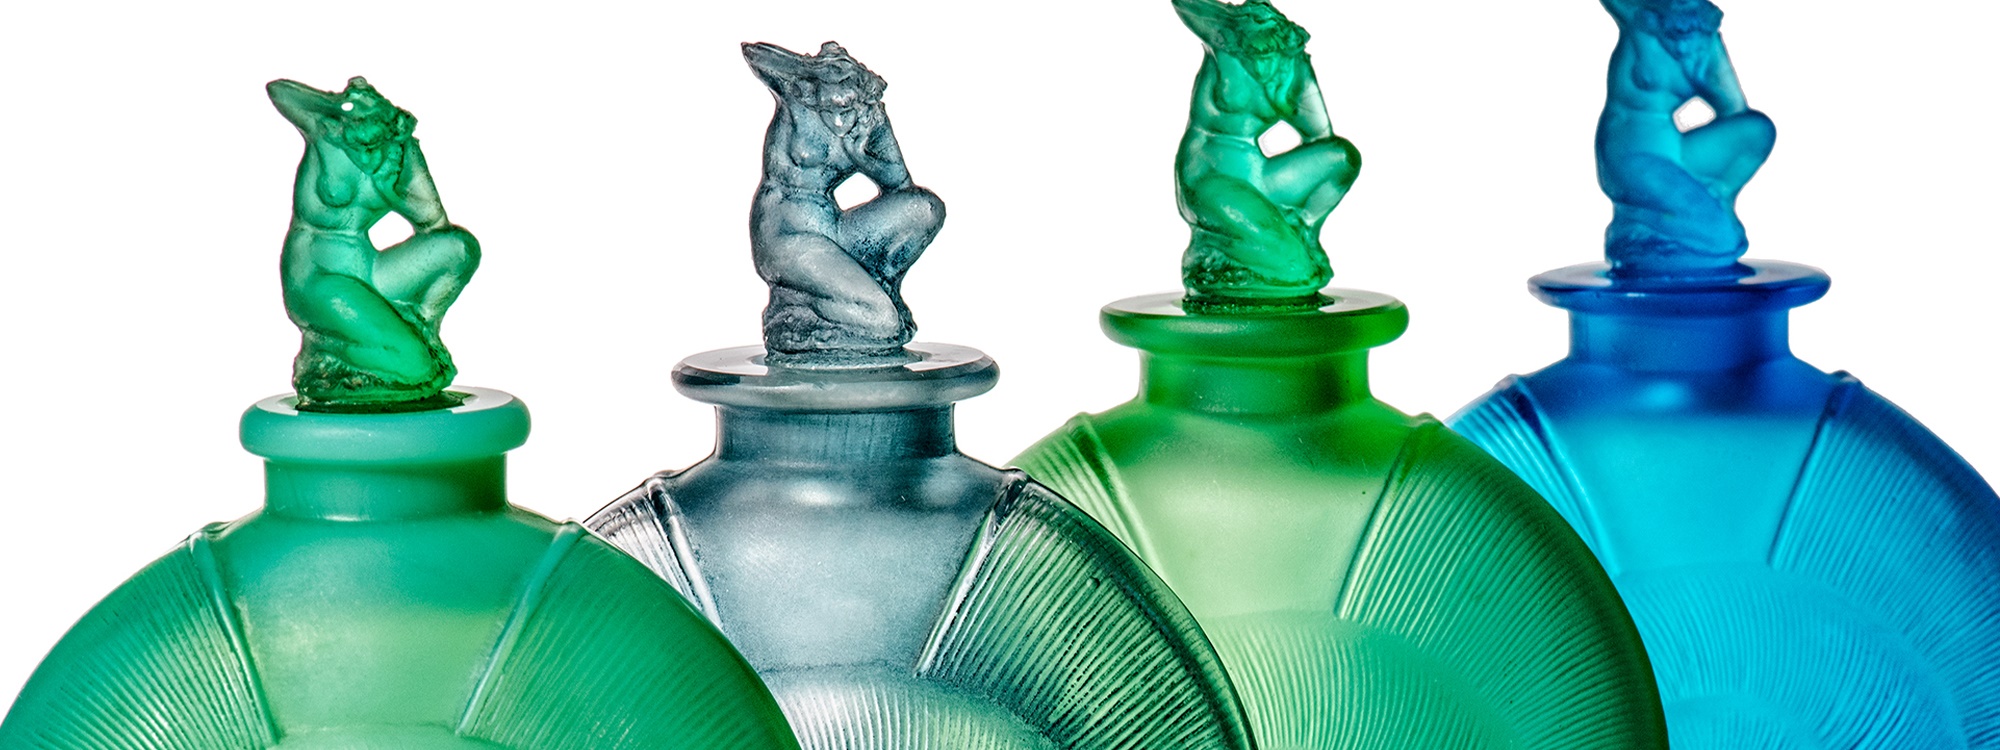 Watch | Lalique's Scent Bottles